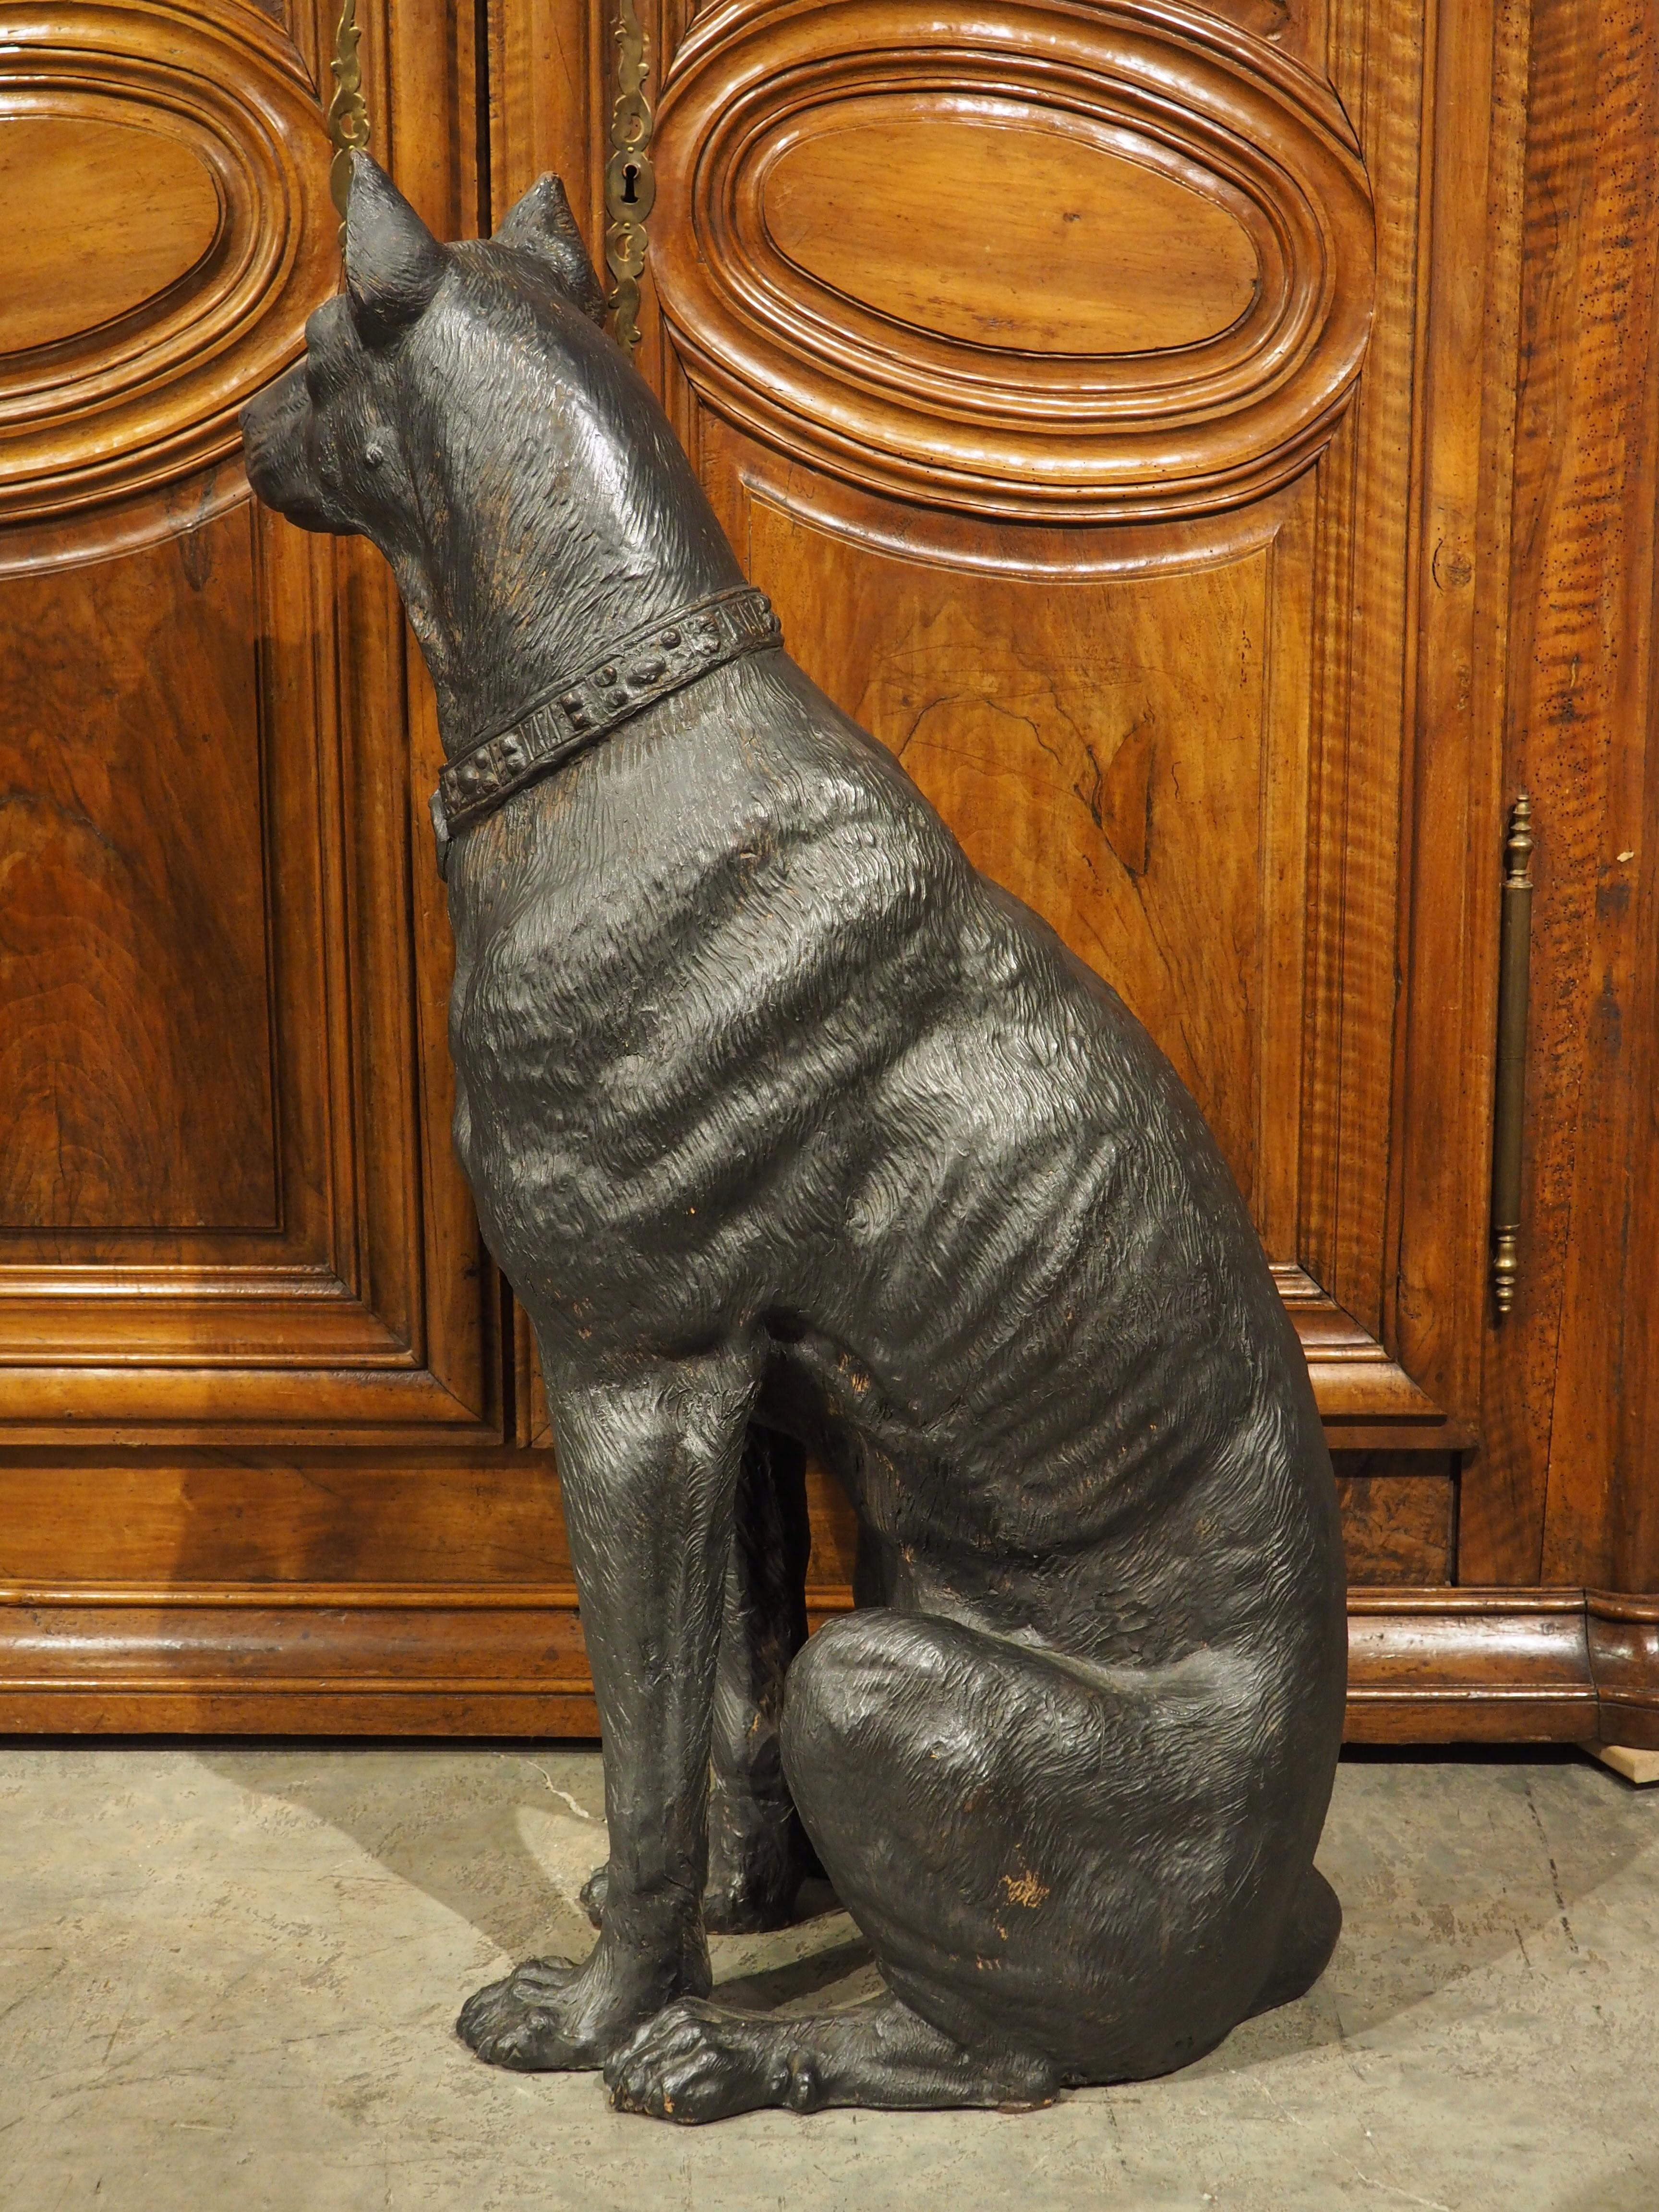 Diese lebensgroße, bemalte Terrakotta-Skulptur stammt ursprünglich aus Österreich (CIRCA 1880) und stellt einen großen, königlichen Pinscher dar. Der sitzende Hund wurde von Hand schwarz bemalt, wobei leichte Spuren der ursprünglichen orangefarbenen